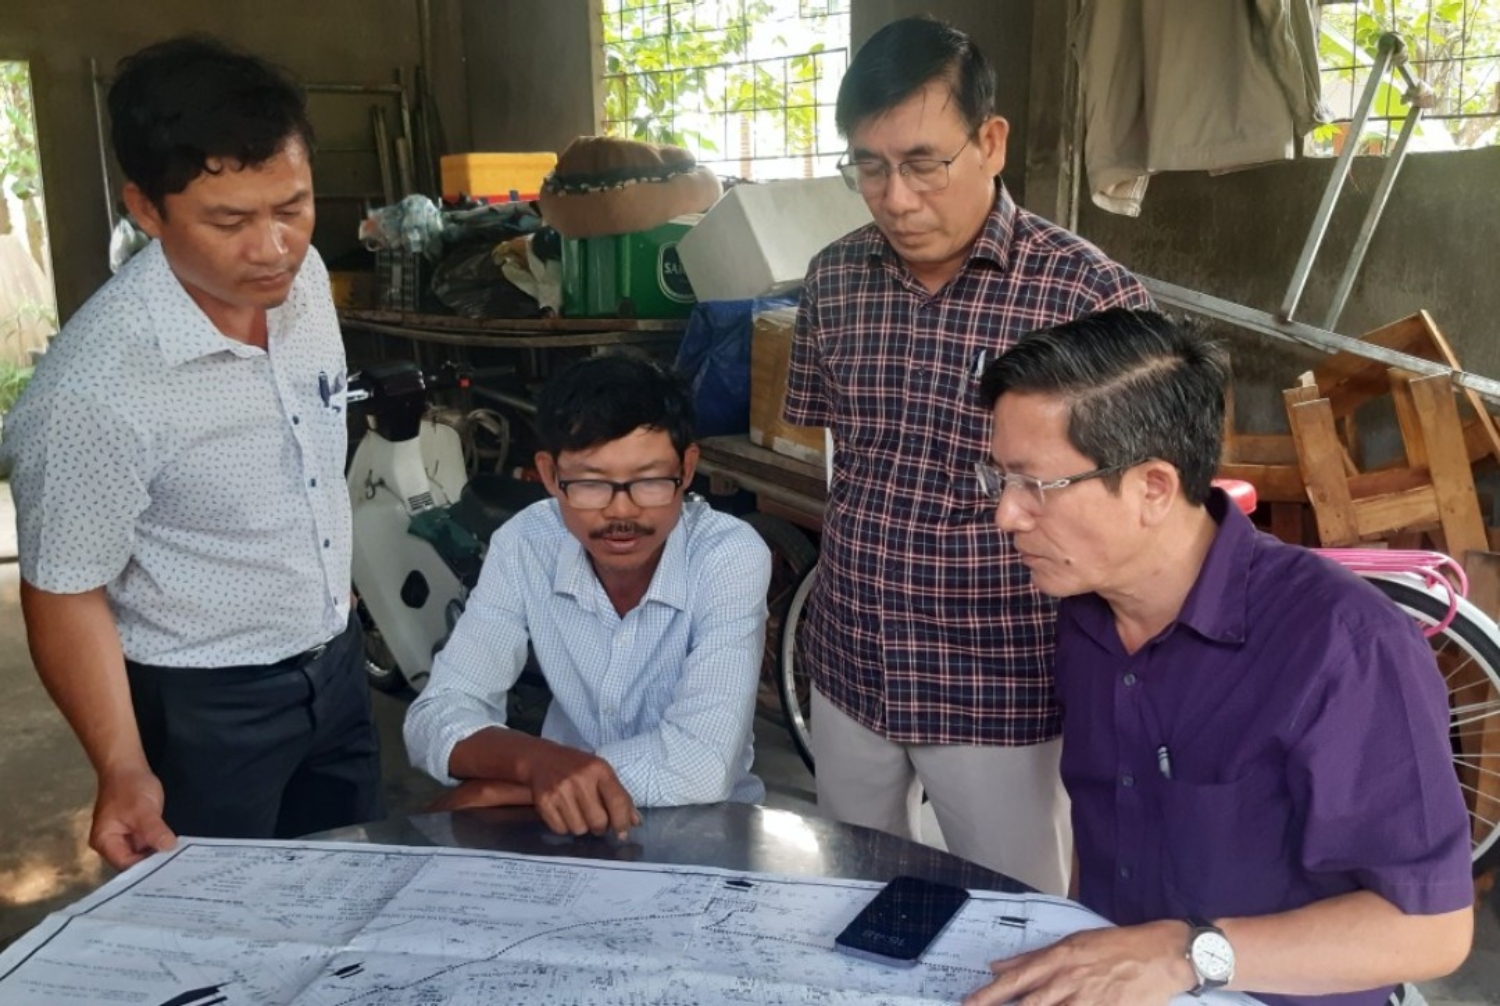 Bí thư Thành ủy Trần Nam Hưng kiểm tra dự án khu dân cư Mỹ Thạch Trung, Hòa Thuận